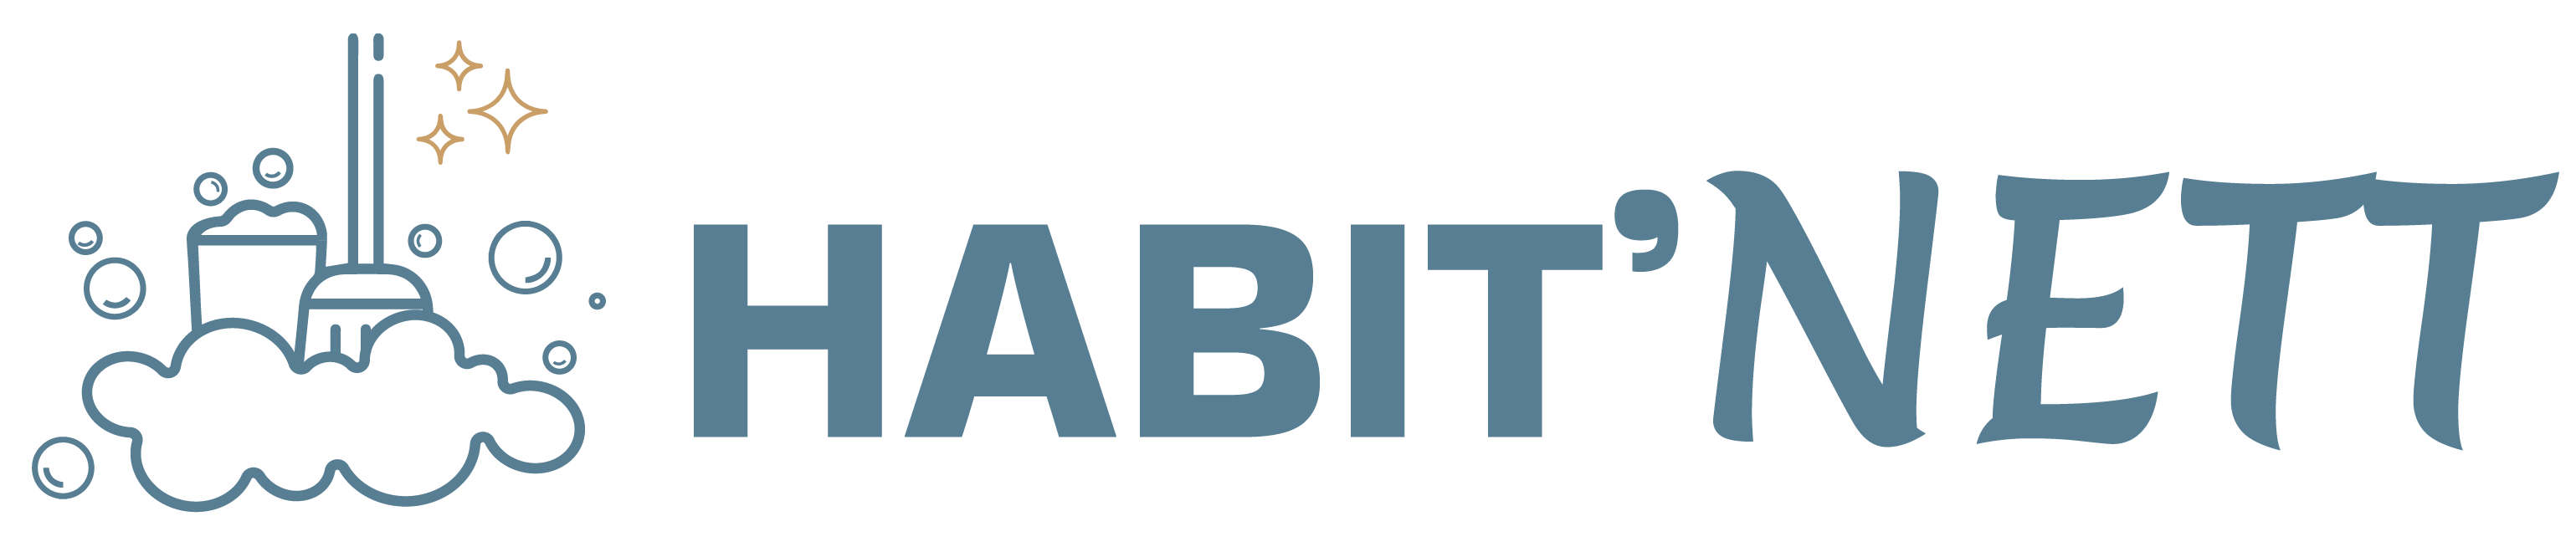 Habit-Nett-Ménage et services